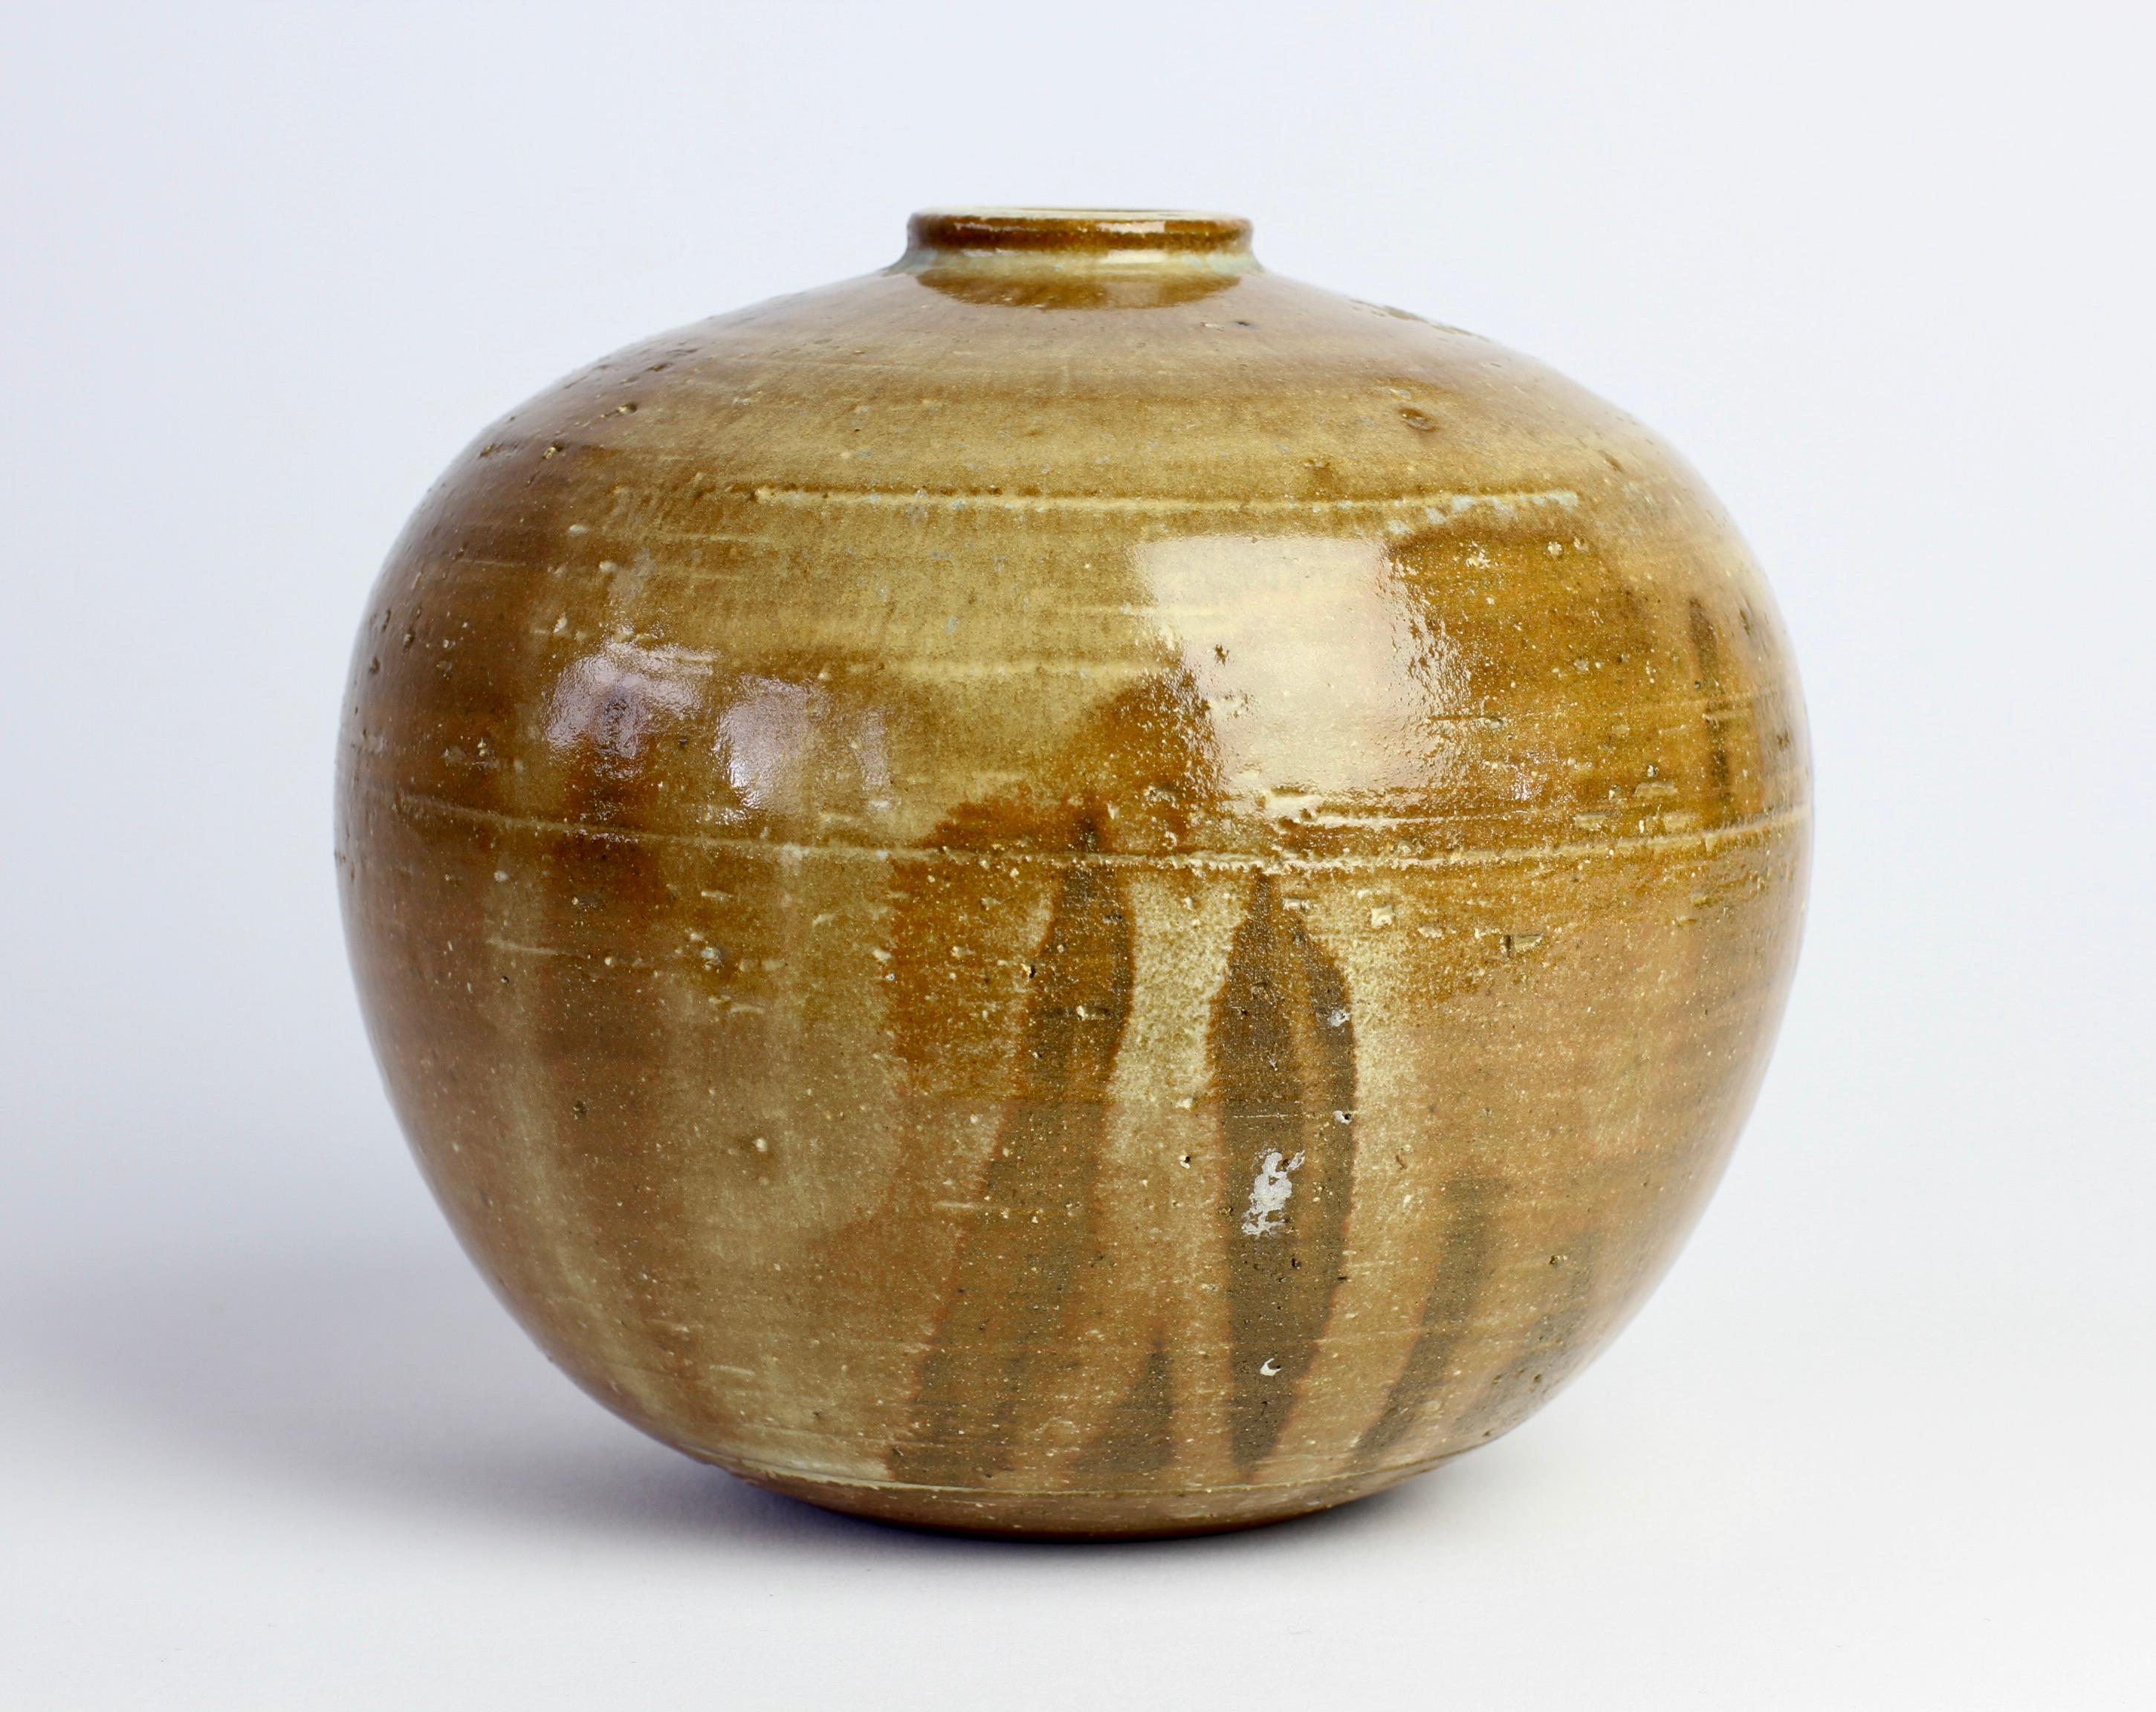 Vintage Glazed Signed European Art Studio Stoneware Pottery Vase or Vessel For Sale 1